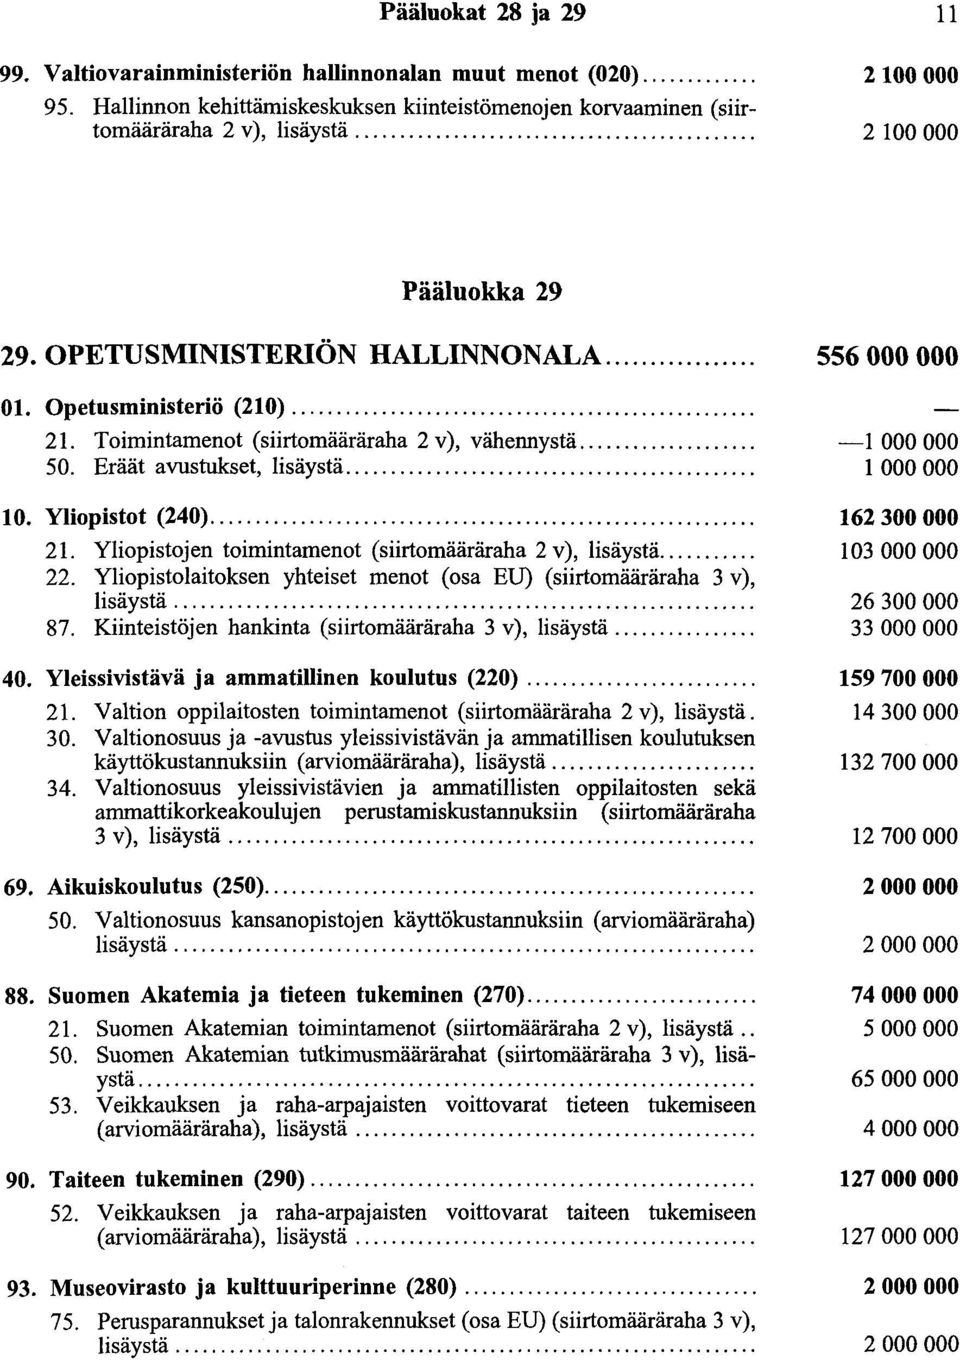 ... 21. Yliopistojen toimintamenot (siirtomääräraha 2 v), lisäystä.... 22. ~l~_opi~tolaitoksen yhteiset menot (osa EU) (siirtomääräraha 3 v), hsaysta.... 87.